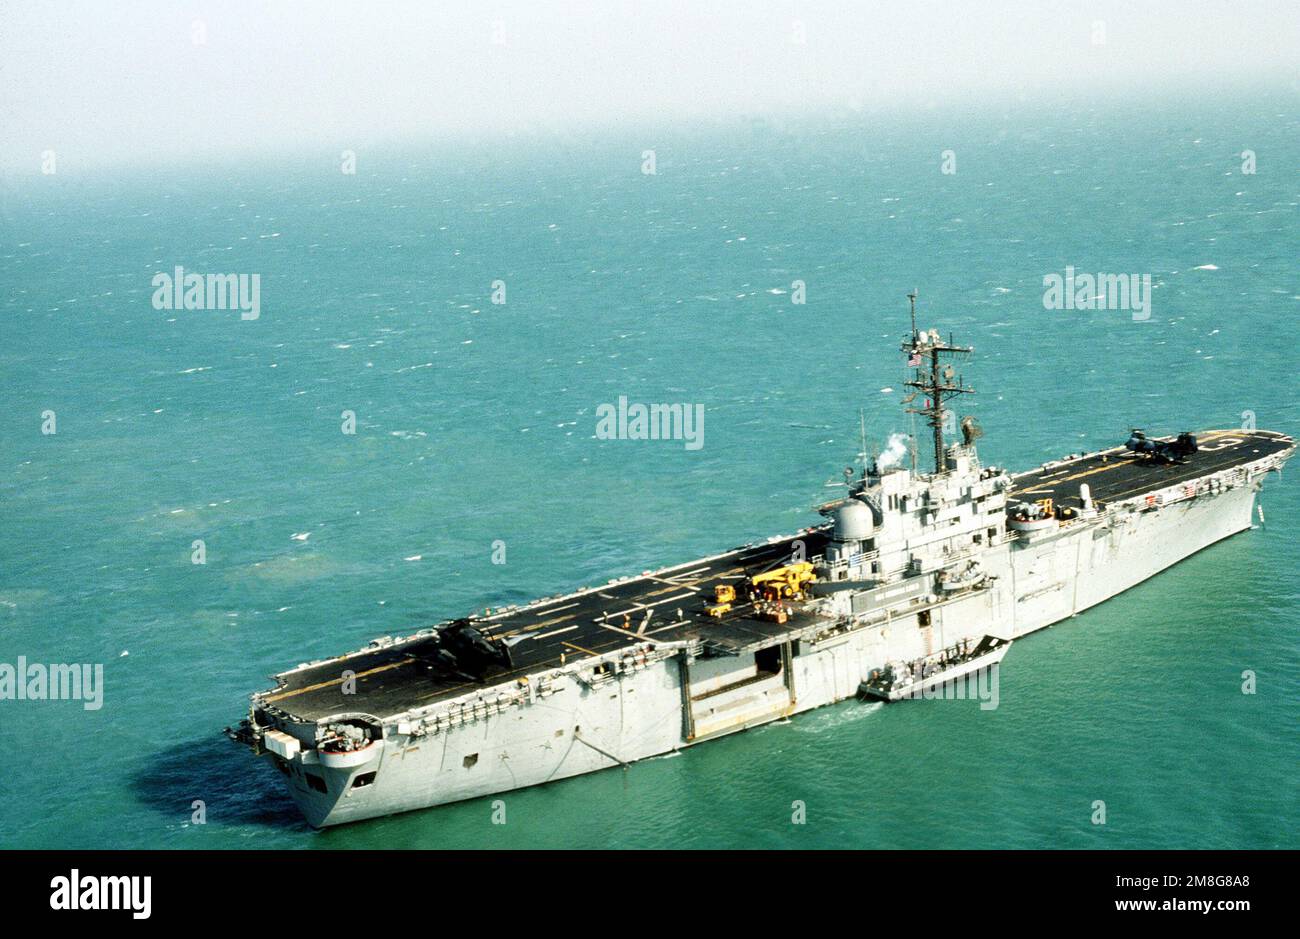 Une vue à tribord du navire d'assaut amphibie USS OKINAWA (LPH-3) amarré dans le golfe, avec un bateau d'atterrissage mécanisé tiré le long. Les membres d'équipage d'OKINAWA et d'autres navires participent à l'exercice Eager Mace 92-1, le premier important exercice de service combiné États-Unis/Koweït depuis la fin de l'opération Desert Storm. Objet opération/série: EAGER MACE 92-1DESERT PAYS DE LA TEMPÊTE: Le golfe Persique Banque D'Images